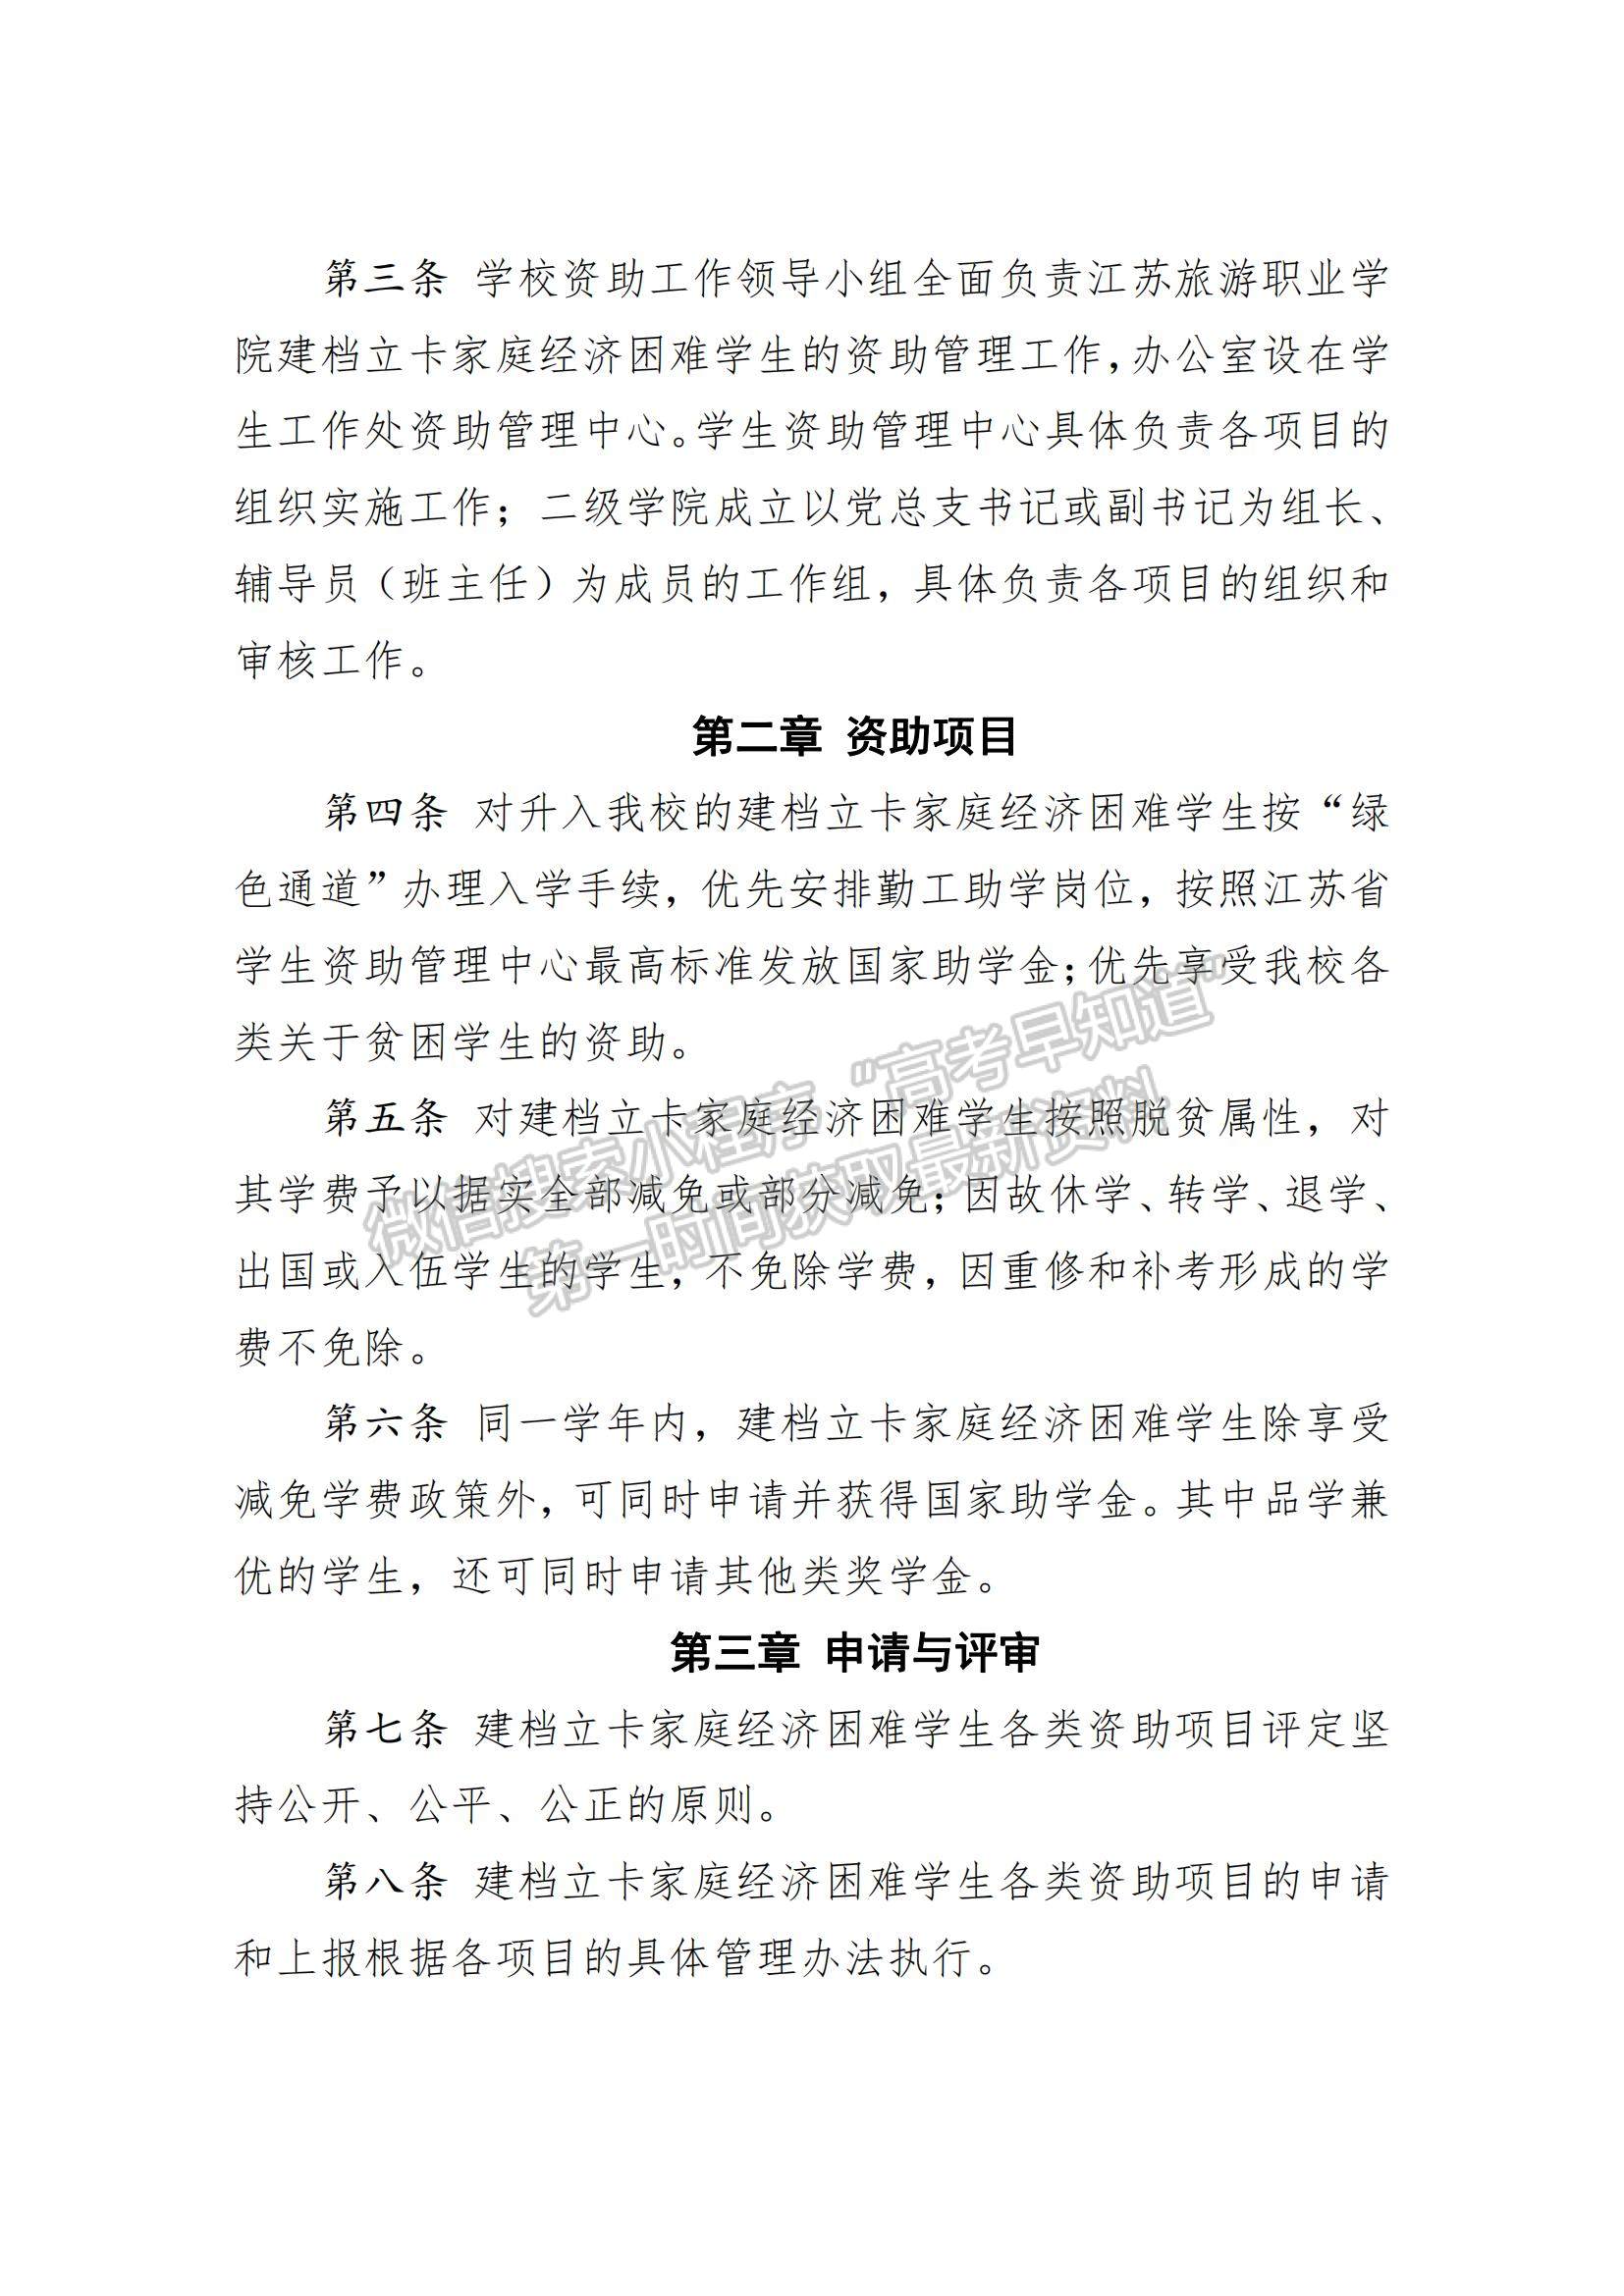 江苏旅游职业学院建档立卡家庭经济困难学生资助细则